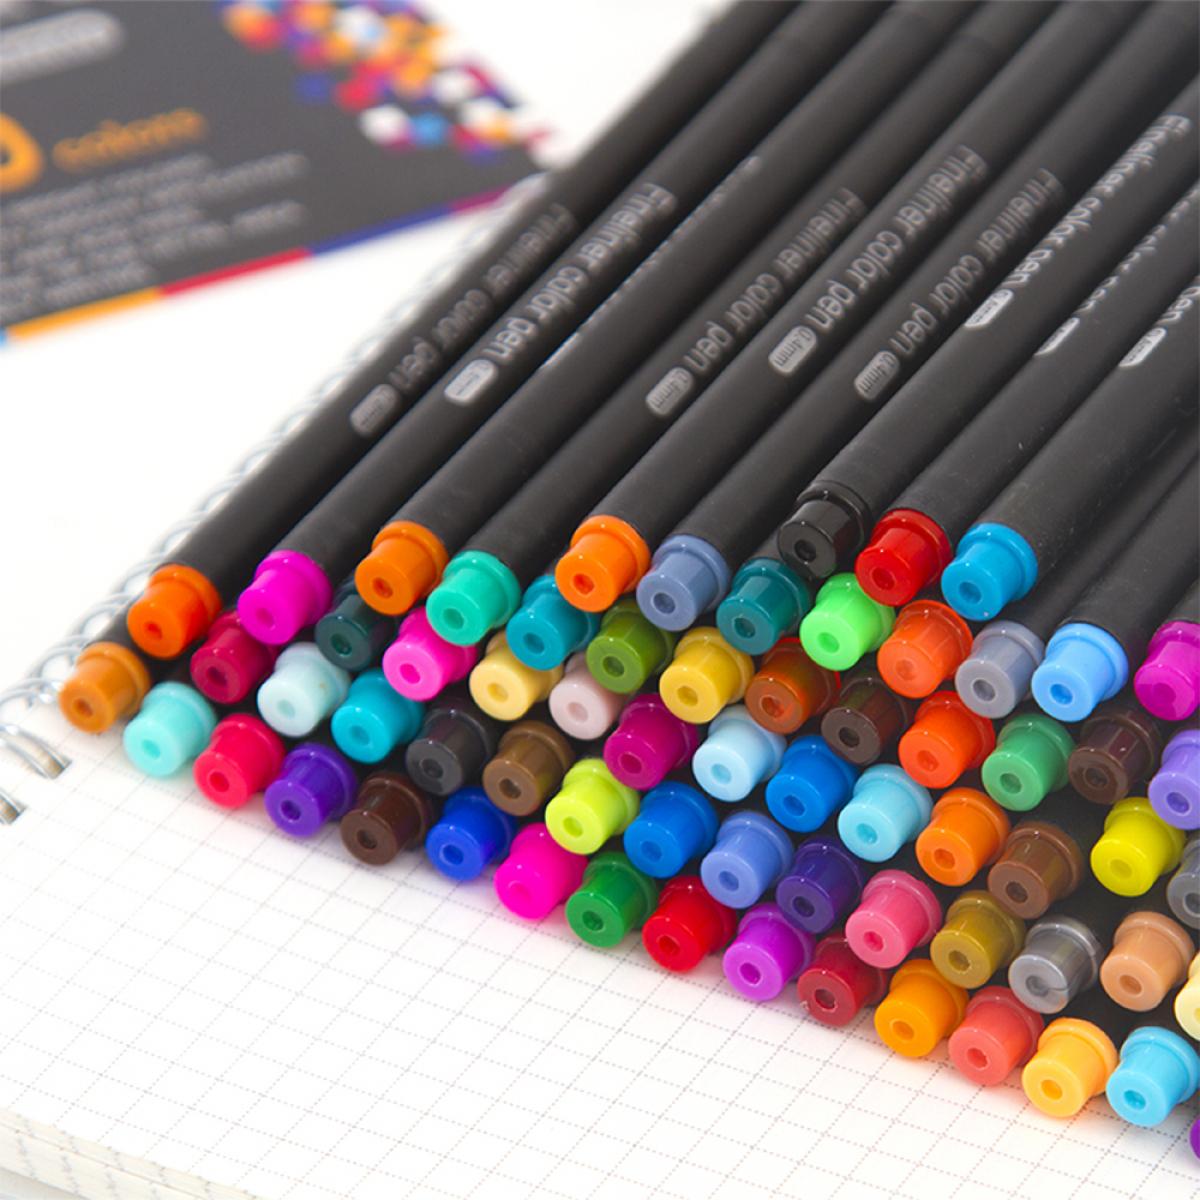 Set di 100 penne professionali COLOR FINELINER punta fine 0,4 mm. Colori definiti e brillanti per contorni, illustrazioni, mandala...